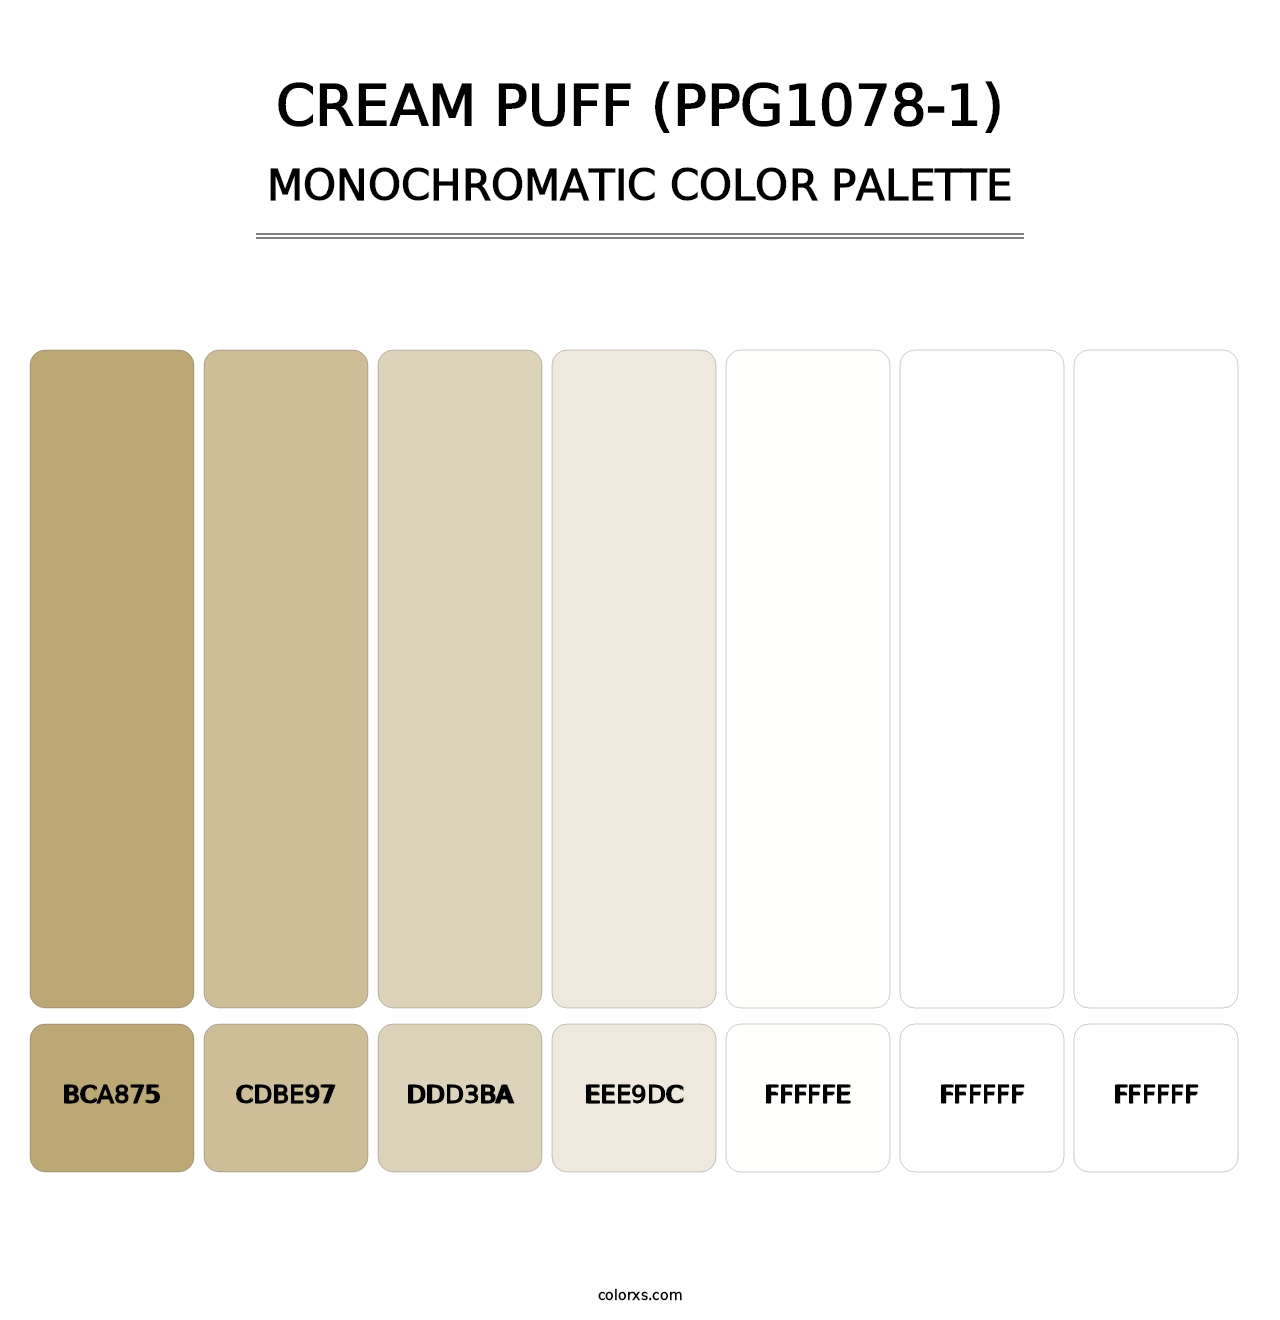 Cream Puff (PPG1078-1) - Monochromatic Color Palette